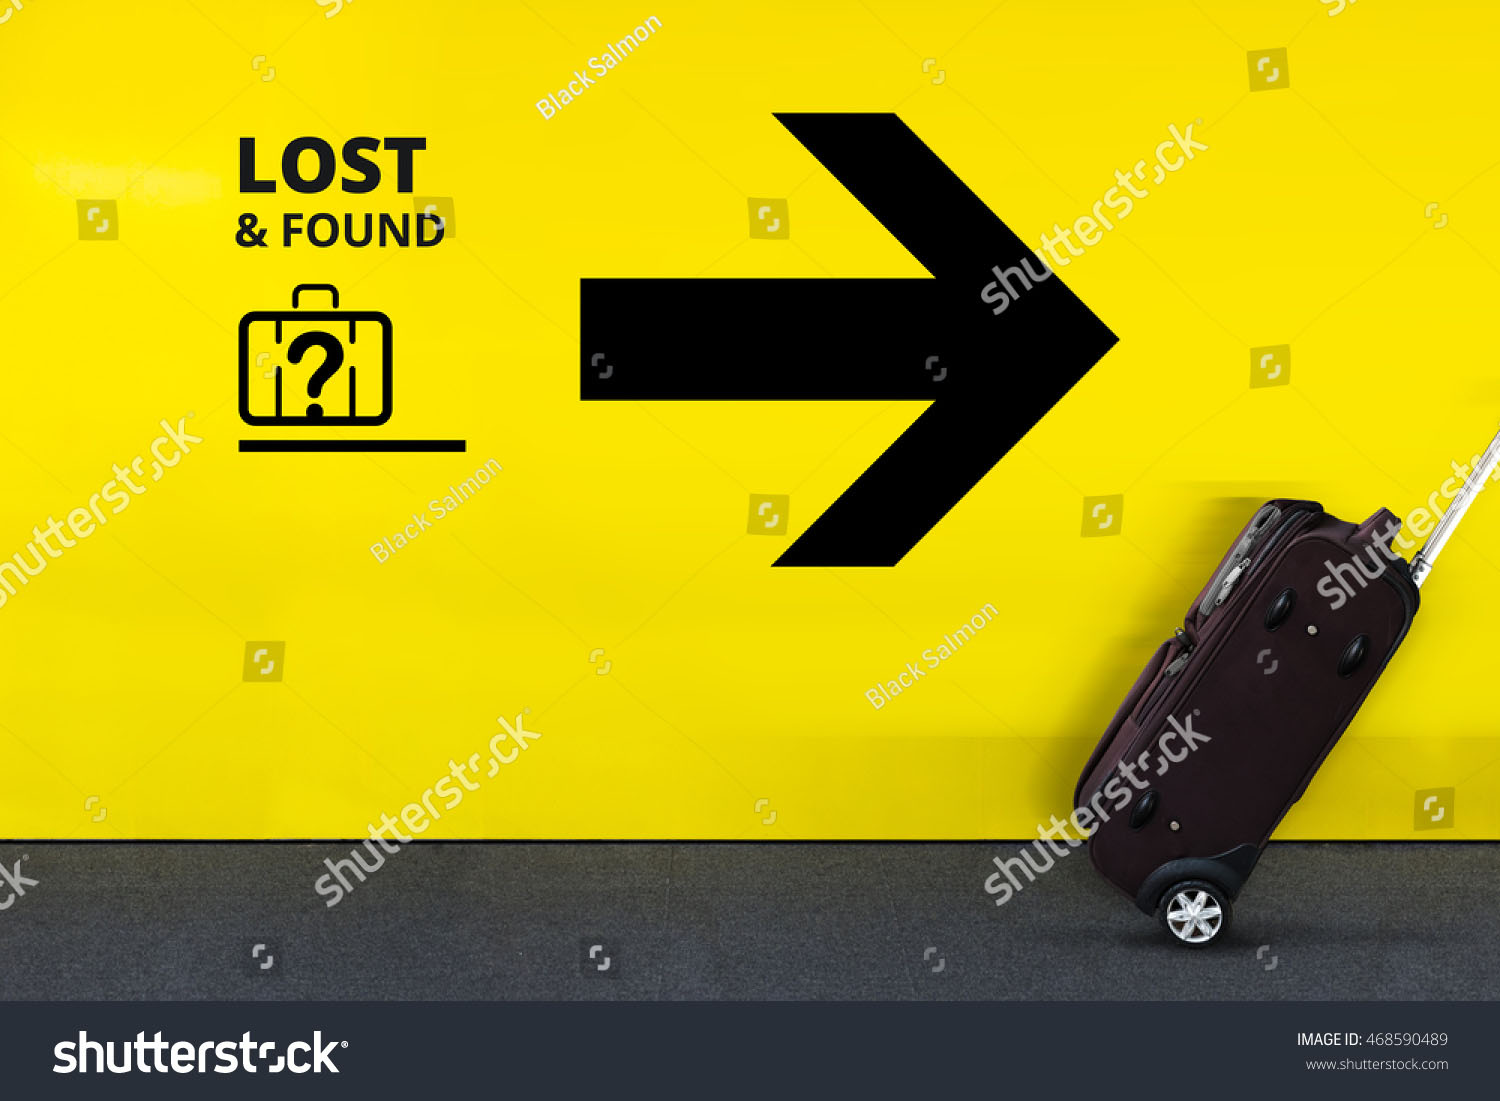 lost-found